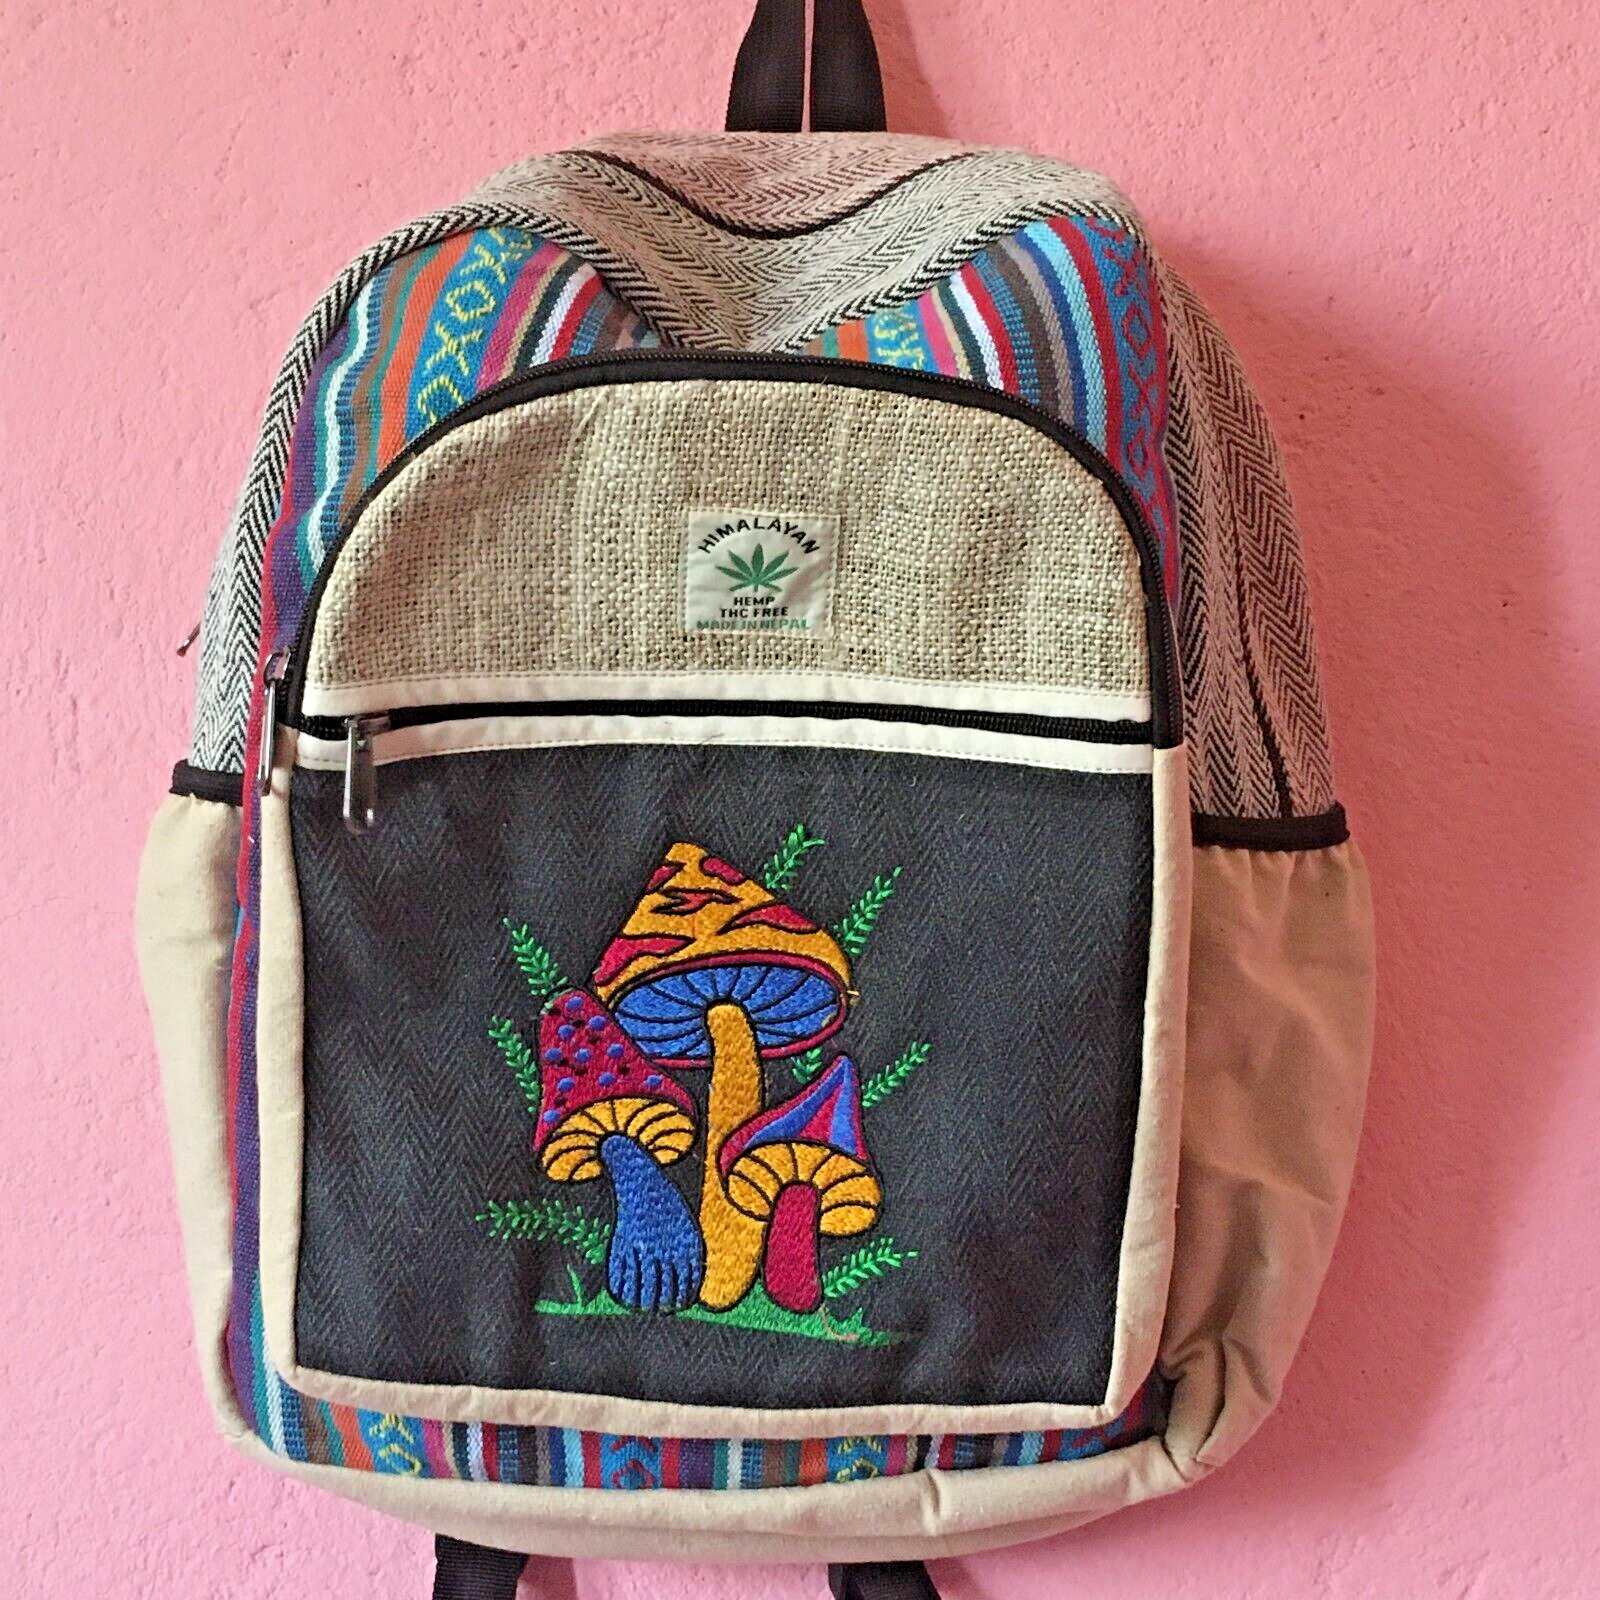 Mushroom Printed Hemp Backpack | Camping/School |Adult Size| Handmade In Nepal |